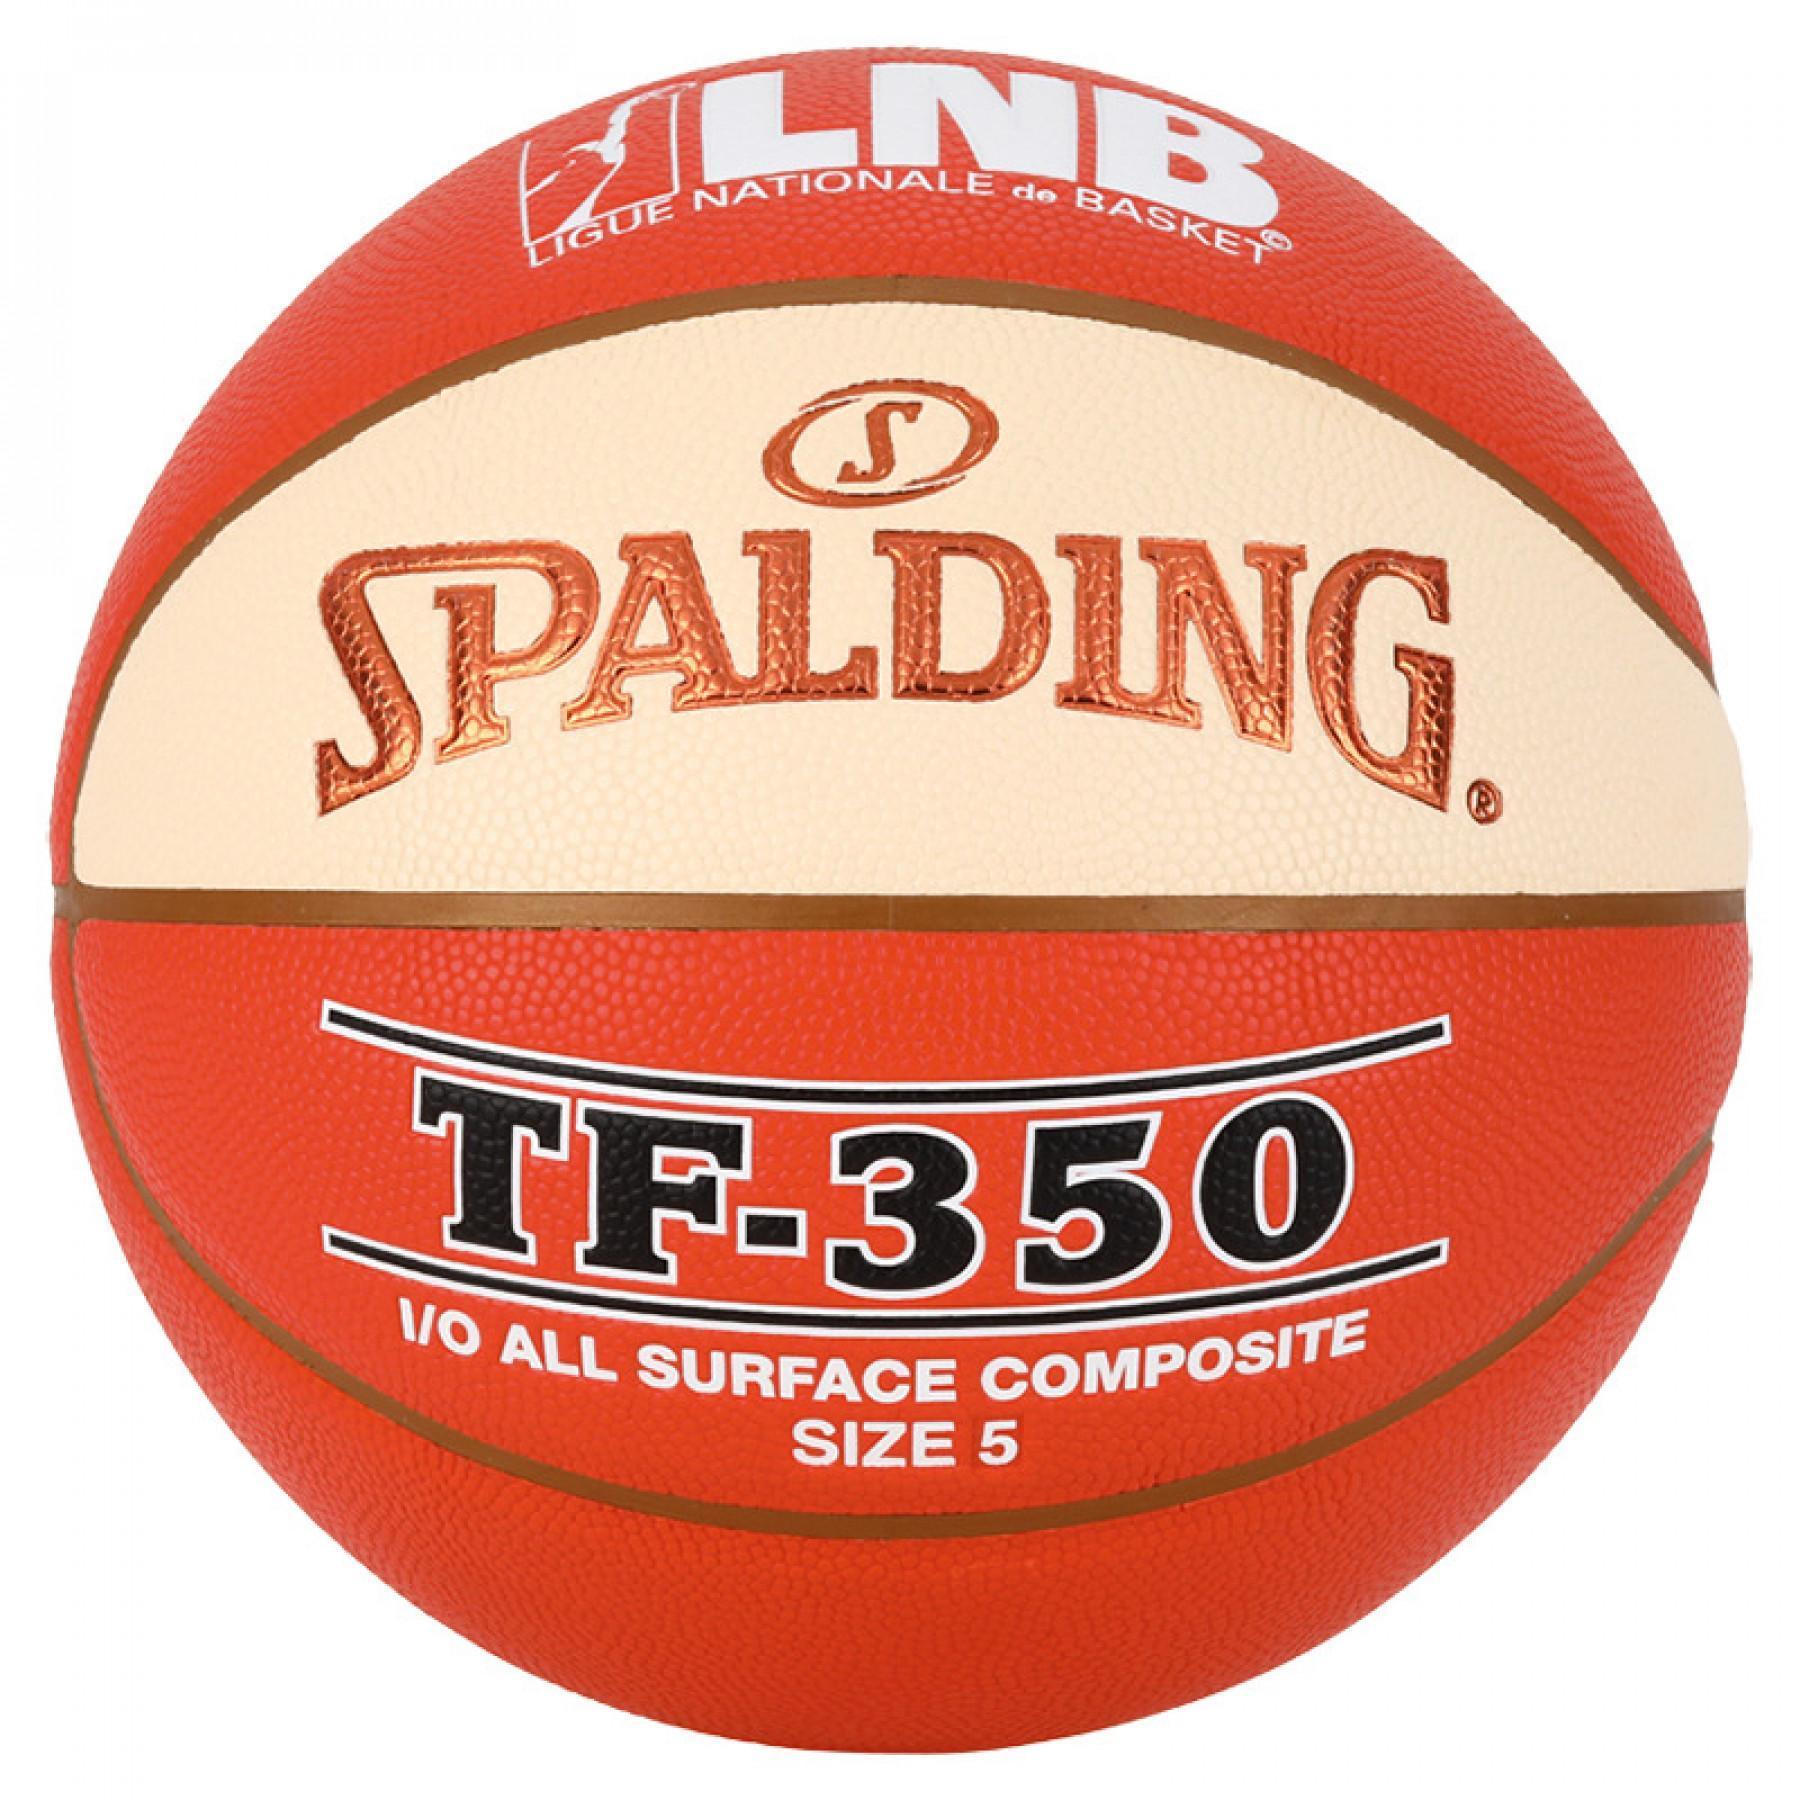 Globo Spalding LNB Tf350 (76-383z)